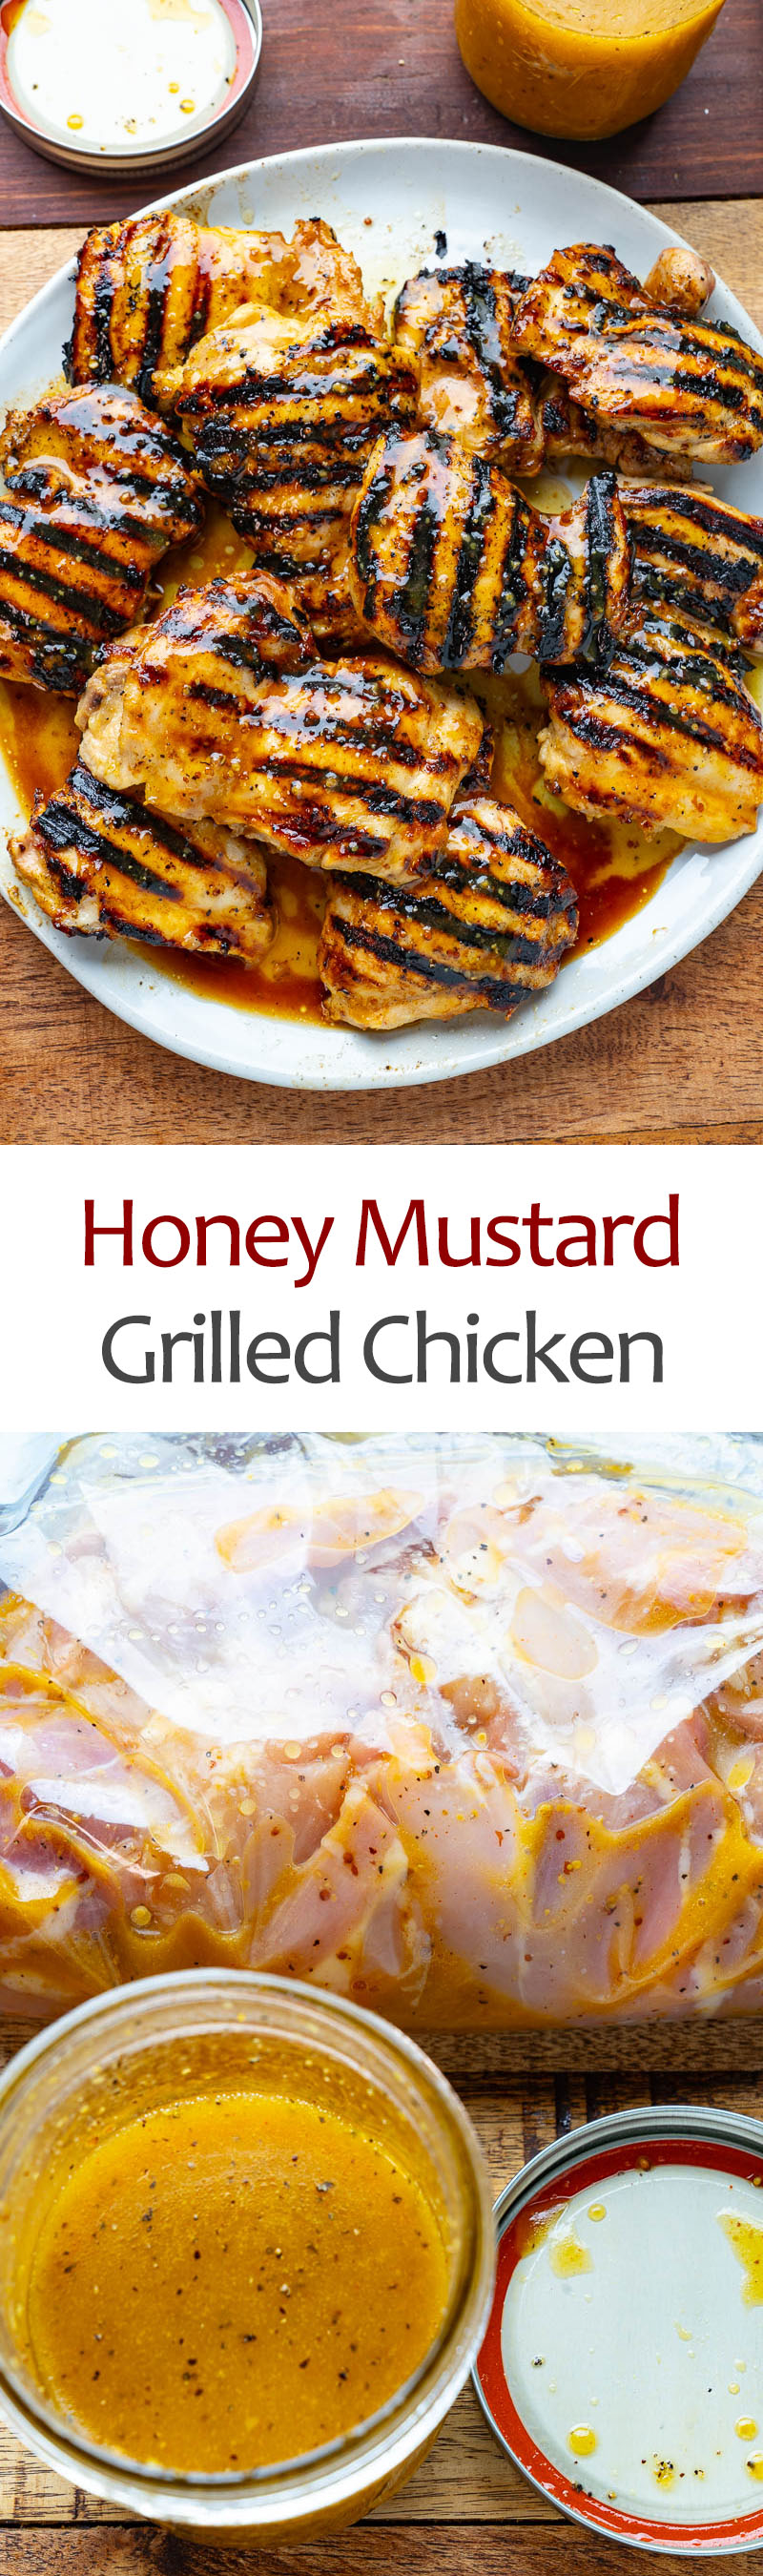 Honey Mustard Grilled Chicken